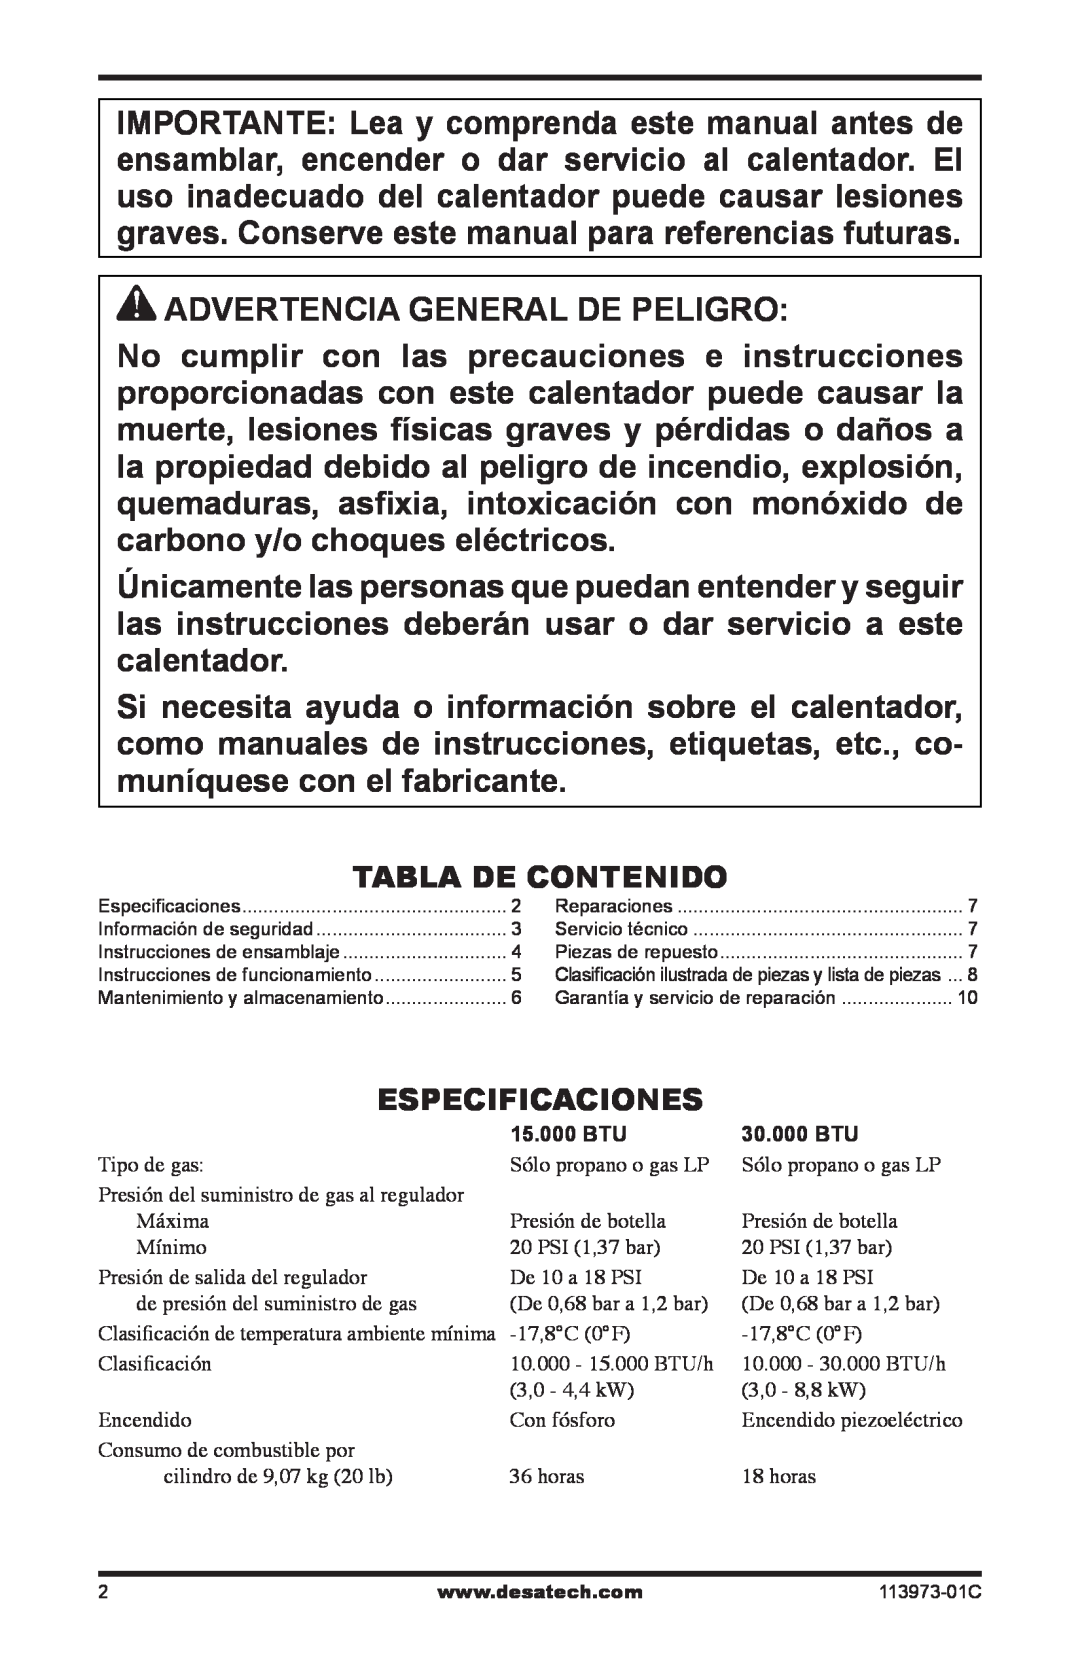 Desa 000-15, TT30, N15A, HD15A, HD30, AND TT15A 10, 000 BTU SPC-30R owner manual Advertencia General De Peligro 